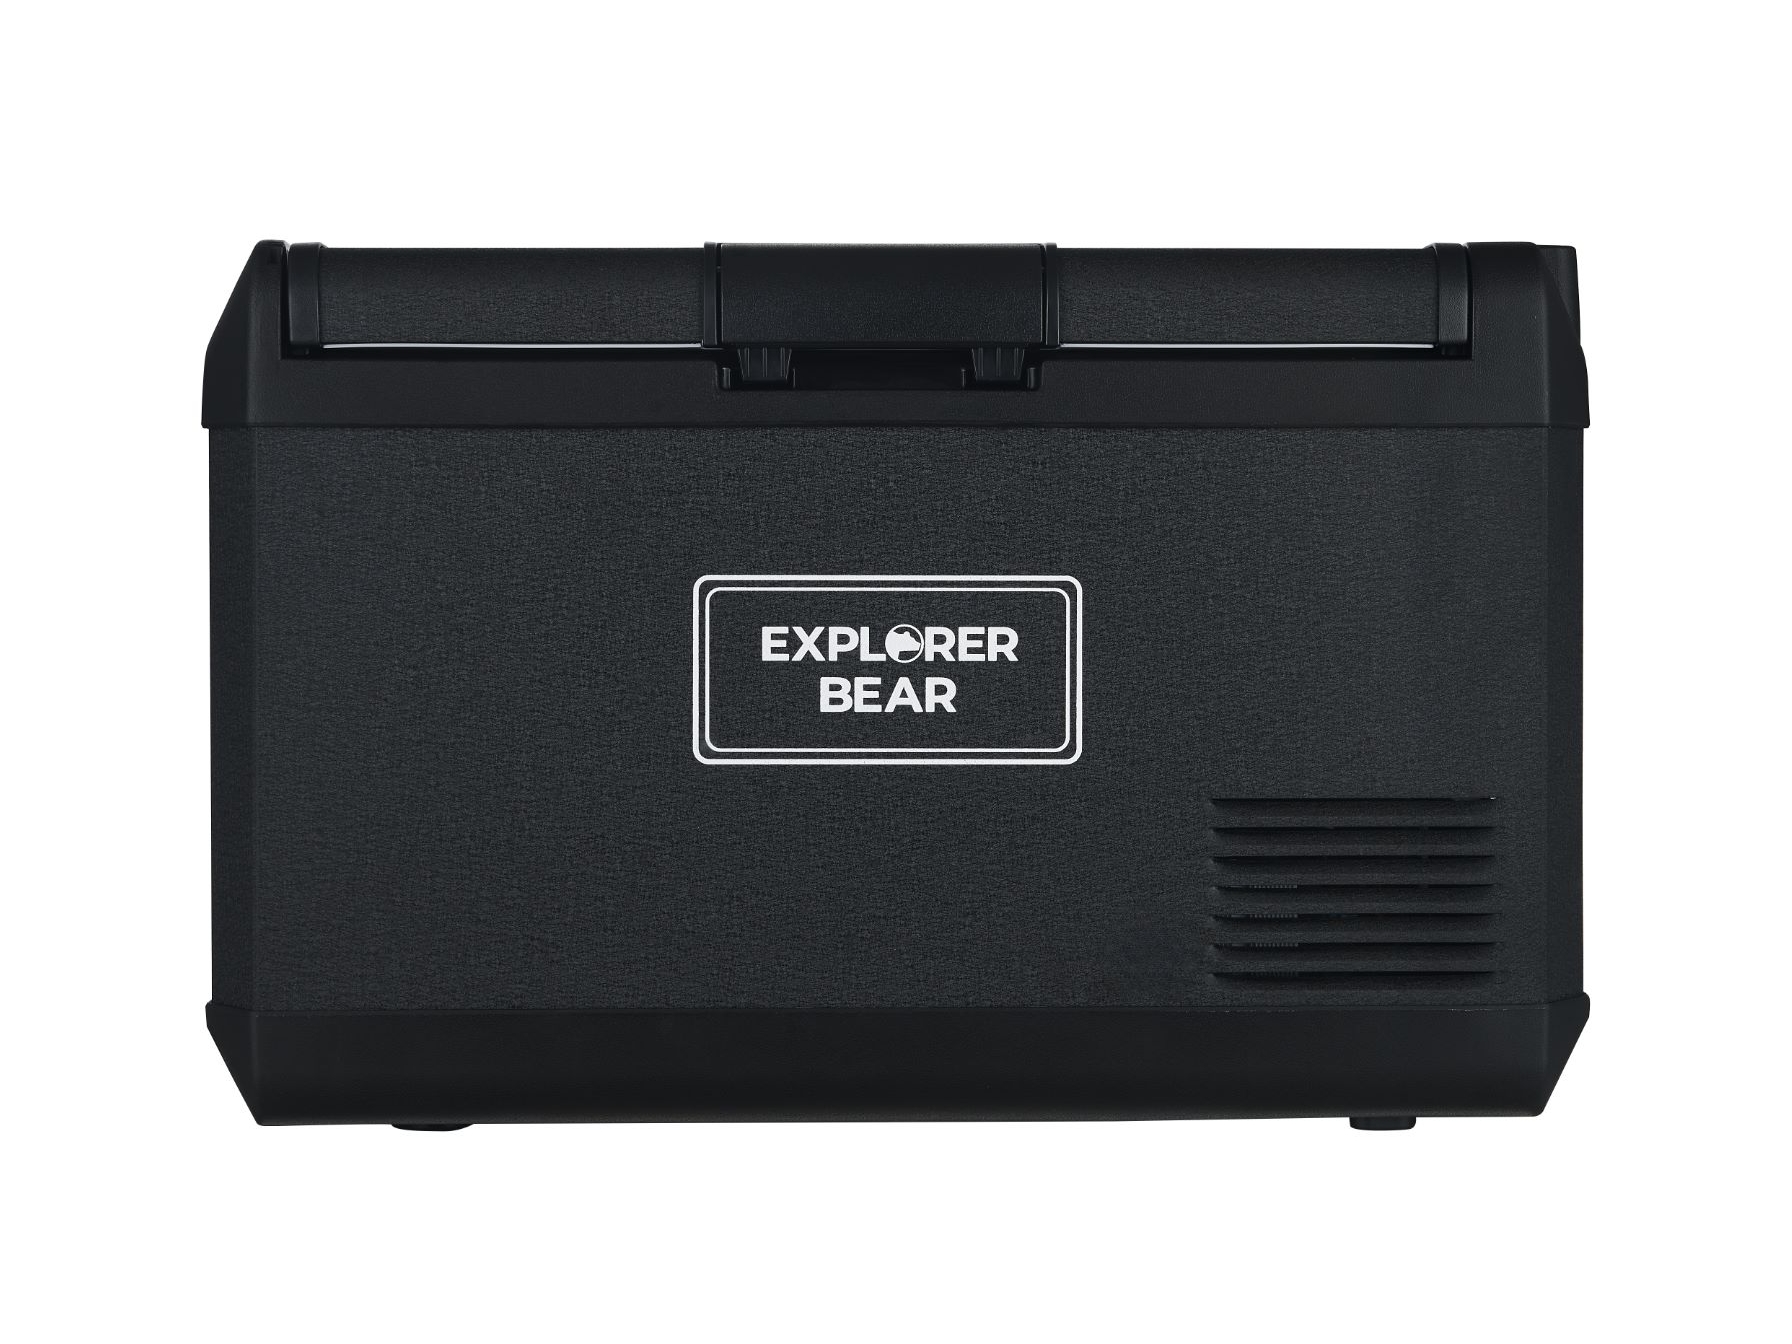 Explorer Bear EX40B 42QT/40L 12/24V Portable Electric Fridge Freezer, Black